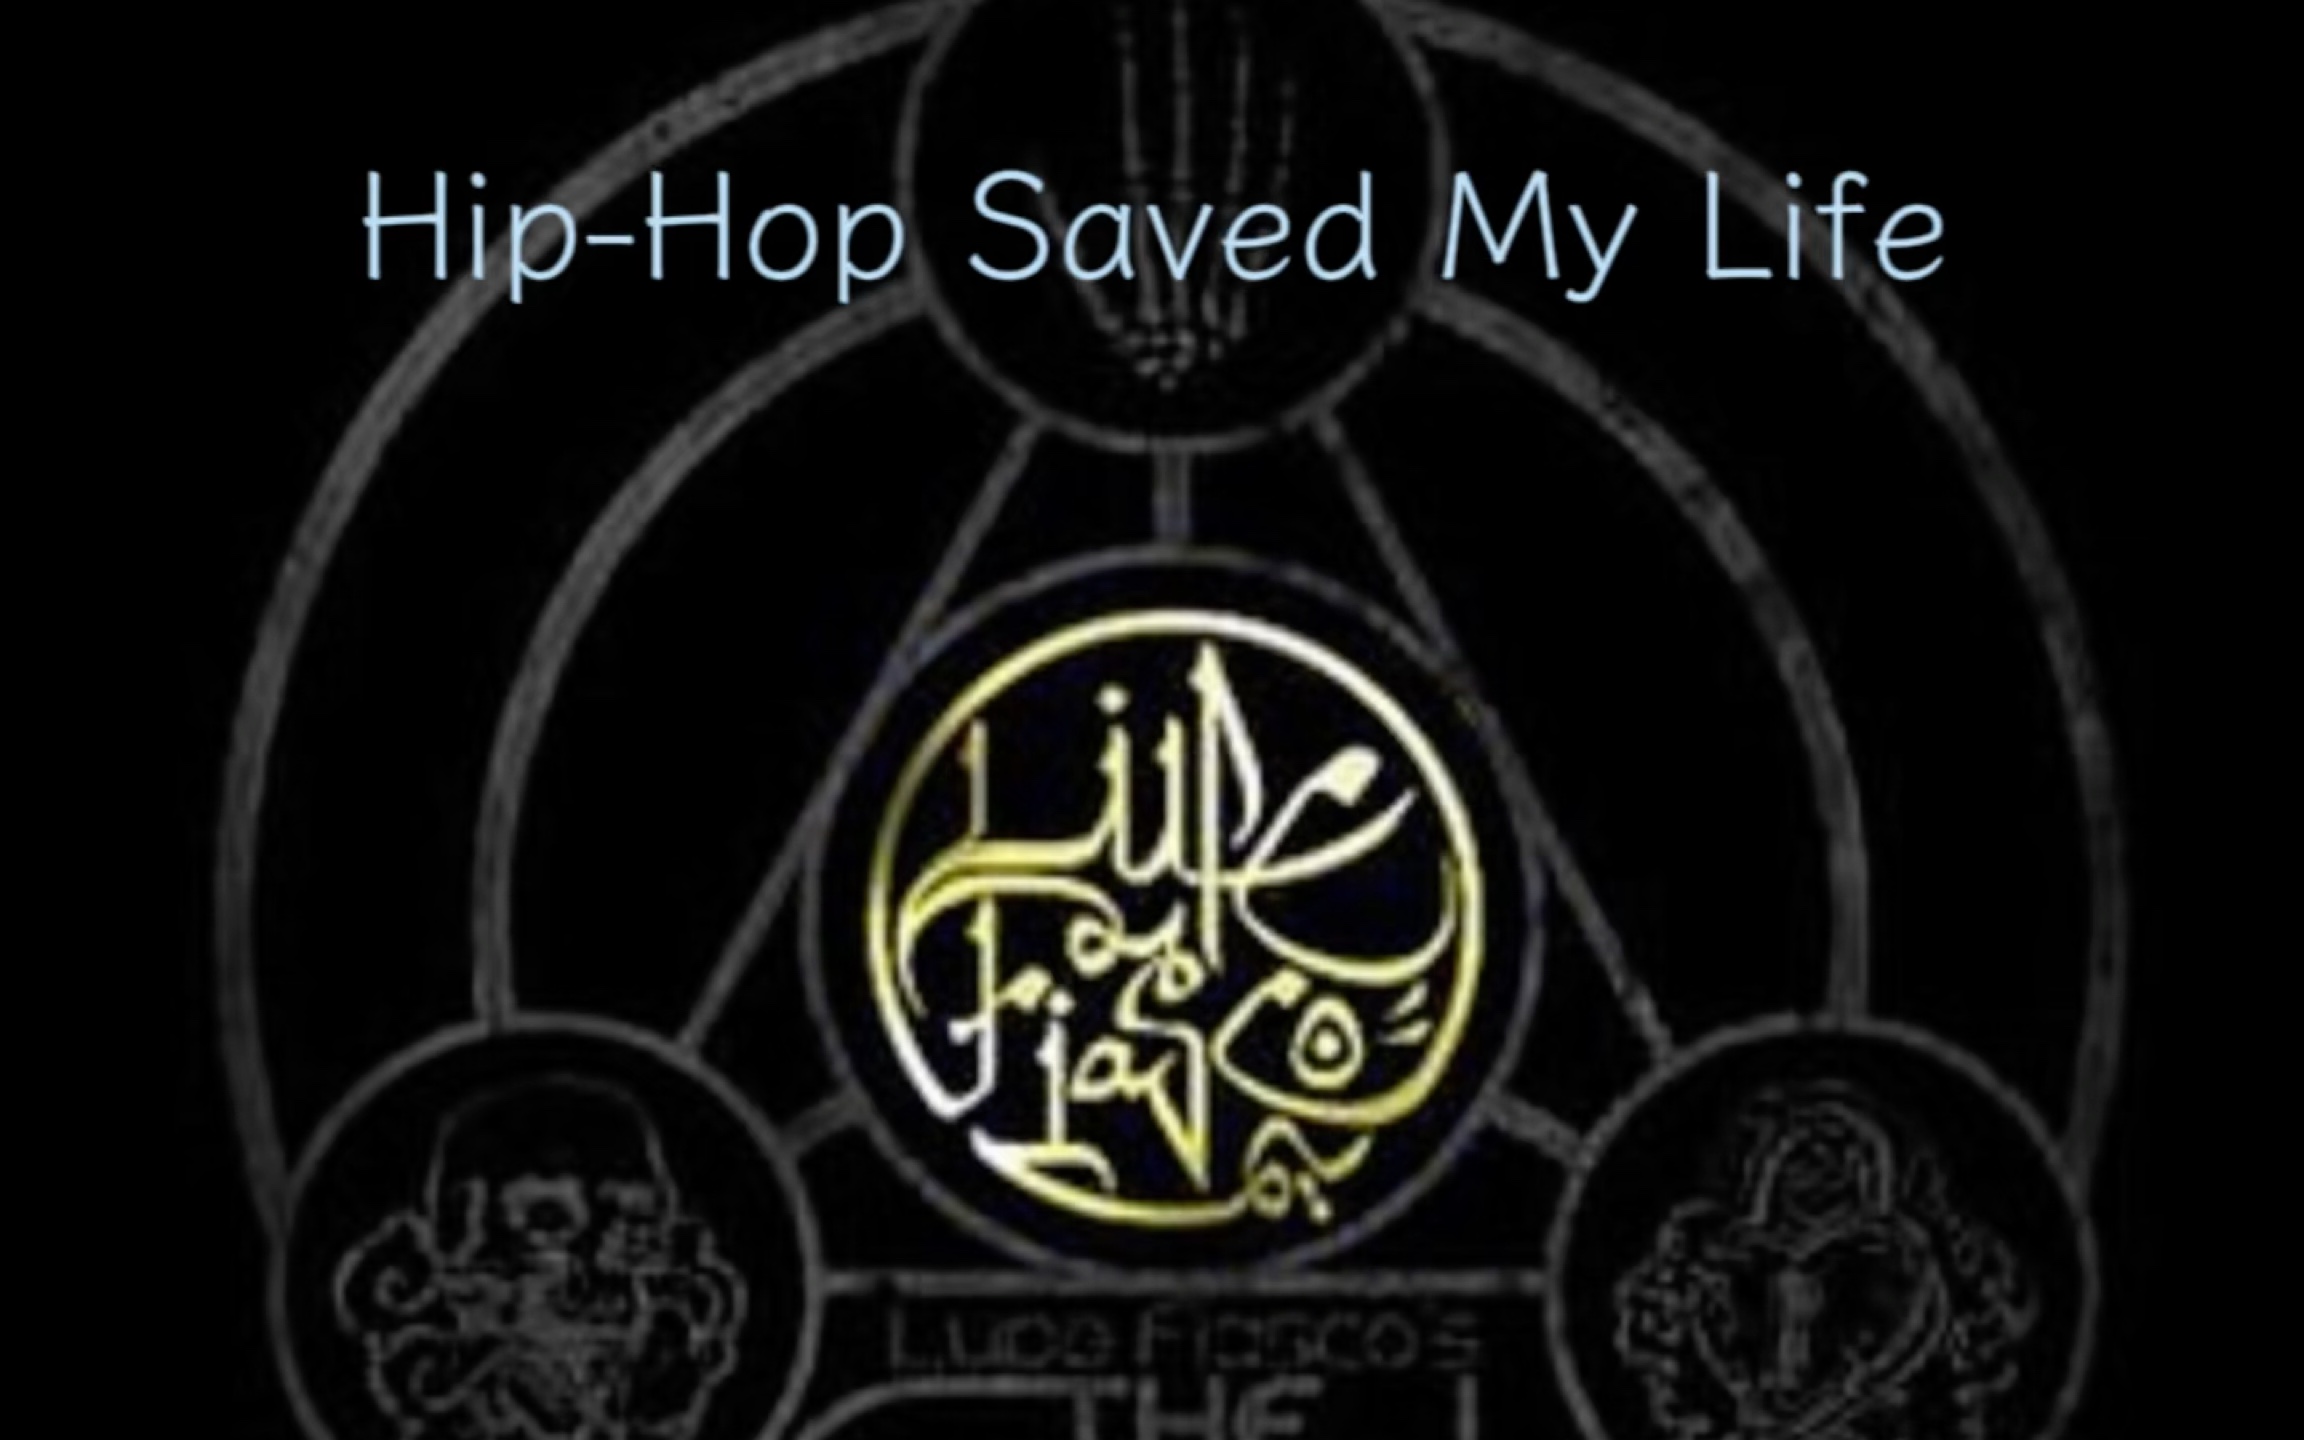 【中英】Lupe Fiasco’s The Cool: Hip-Hop Saved My Life